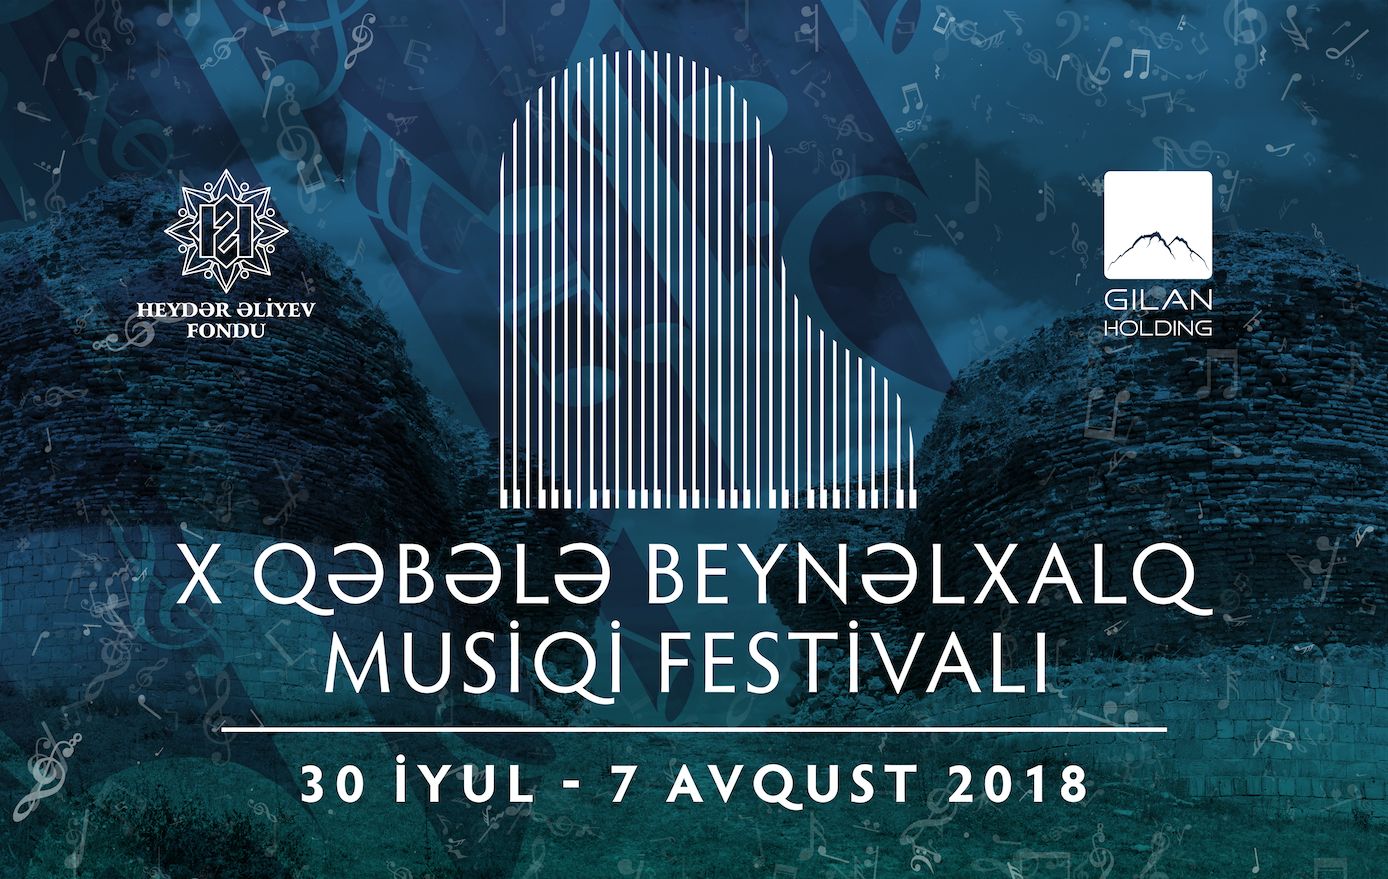 X Qəbələ Beynəlxalq Musiqi Festivalının proqramı açıqlanıb